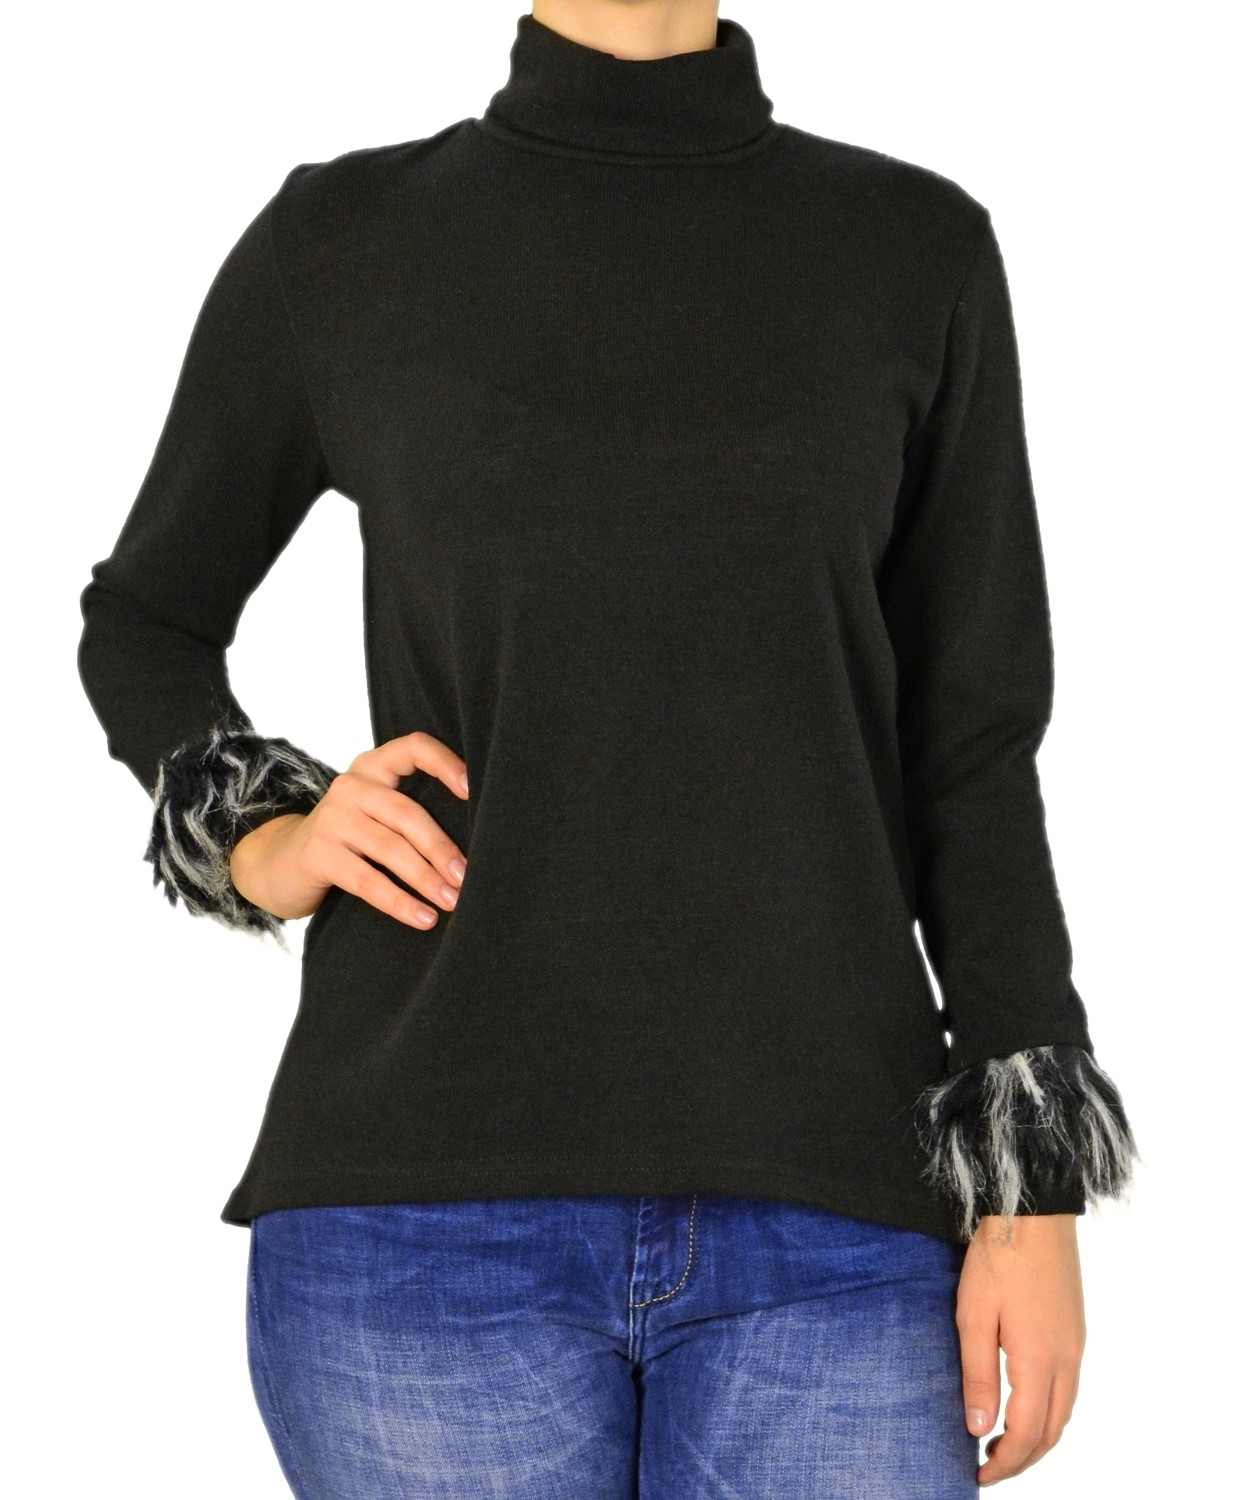 Γυναικεία μπλούζα ζιβάγκο Lipsy μαύρη γουνάκι 2170162F